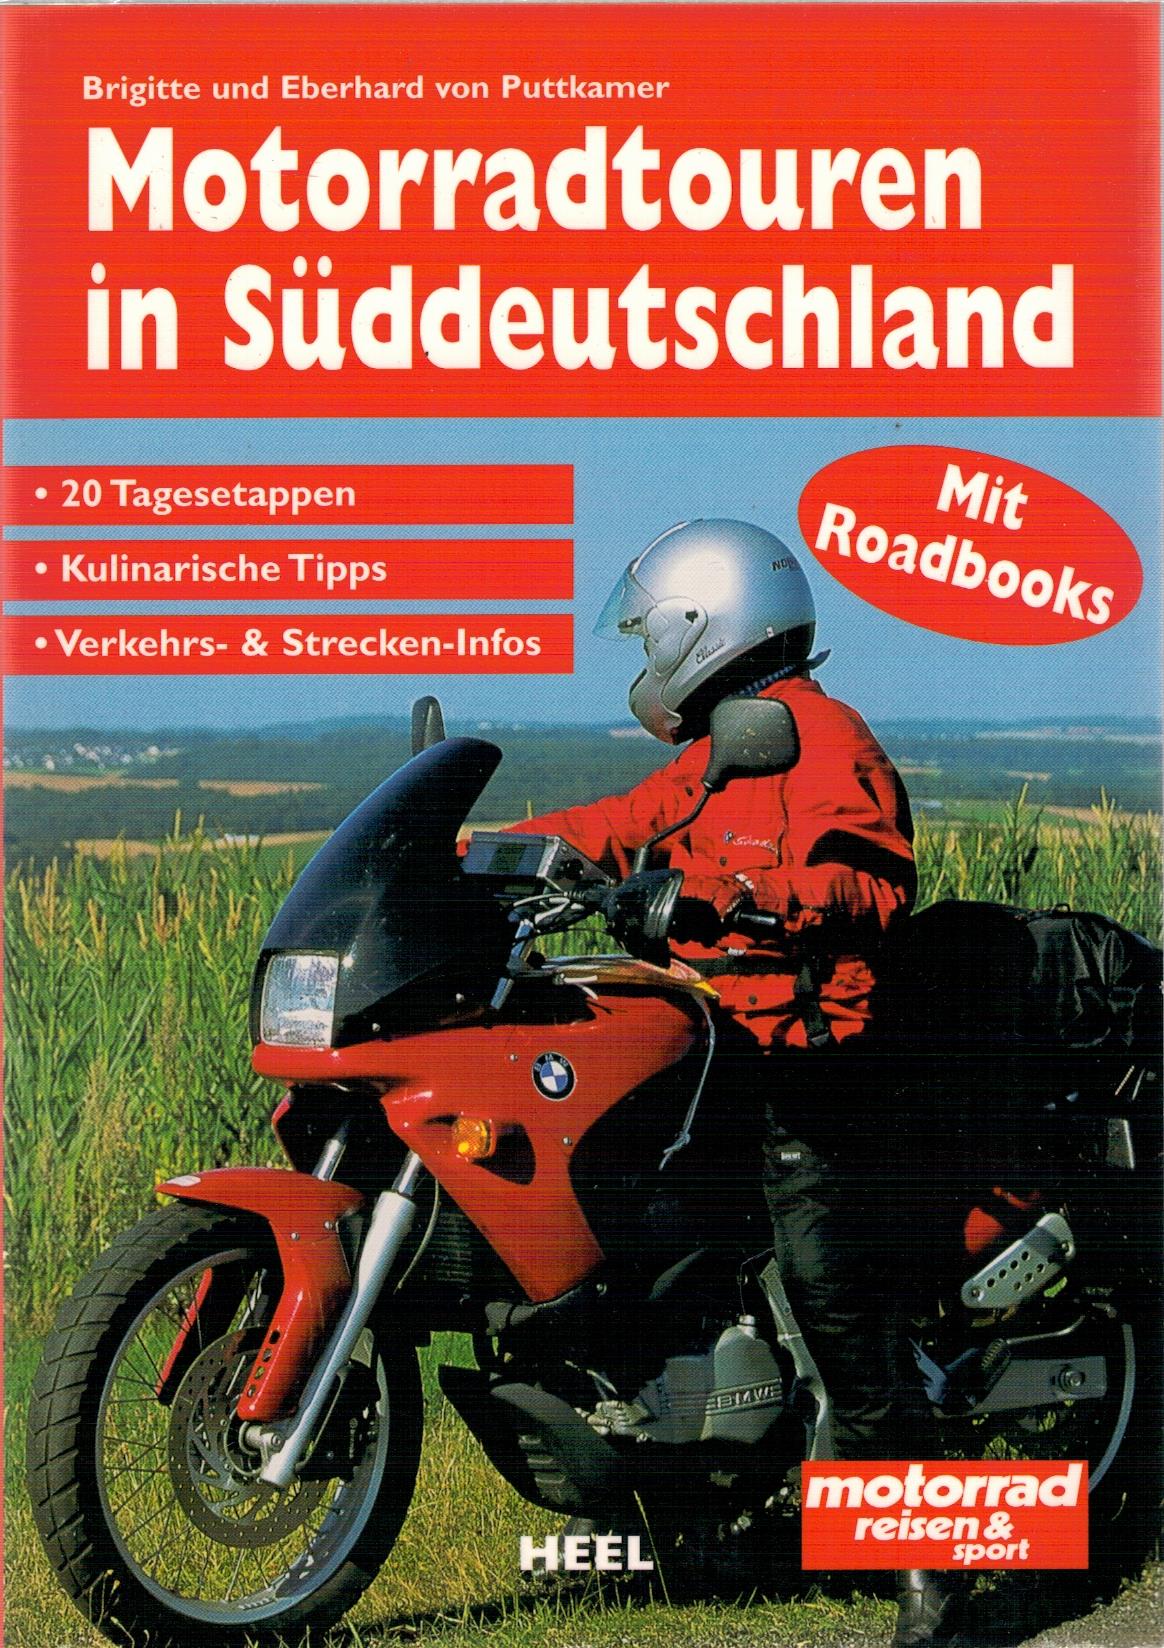 Motorradtouren in S?ddeutschland - Puttkamer, Brigitte und Eberhard von